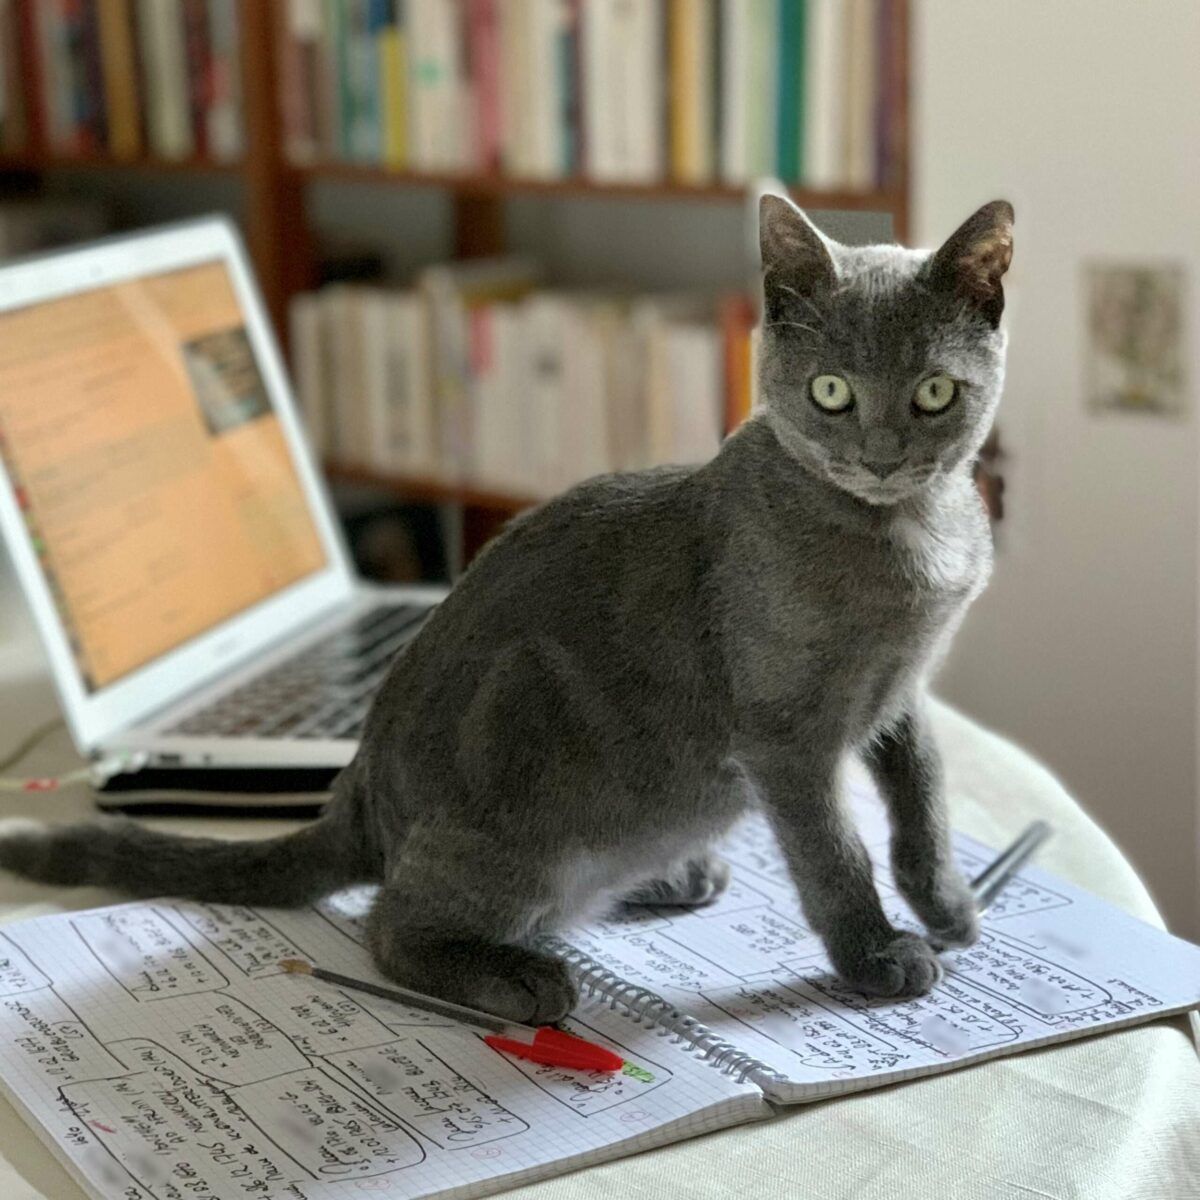 Un "chat généalogiste" regarde l'objectif. Il a l'air surpris. Il est assis sur un cahier contenant le brouillon d'un arbre généalogique.